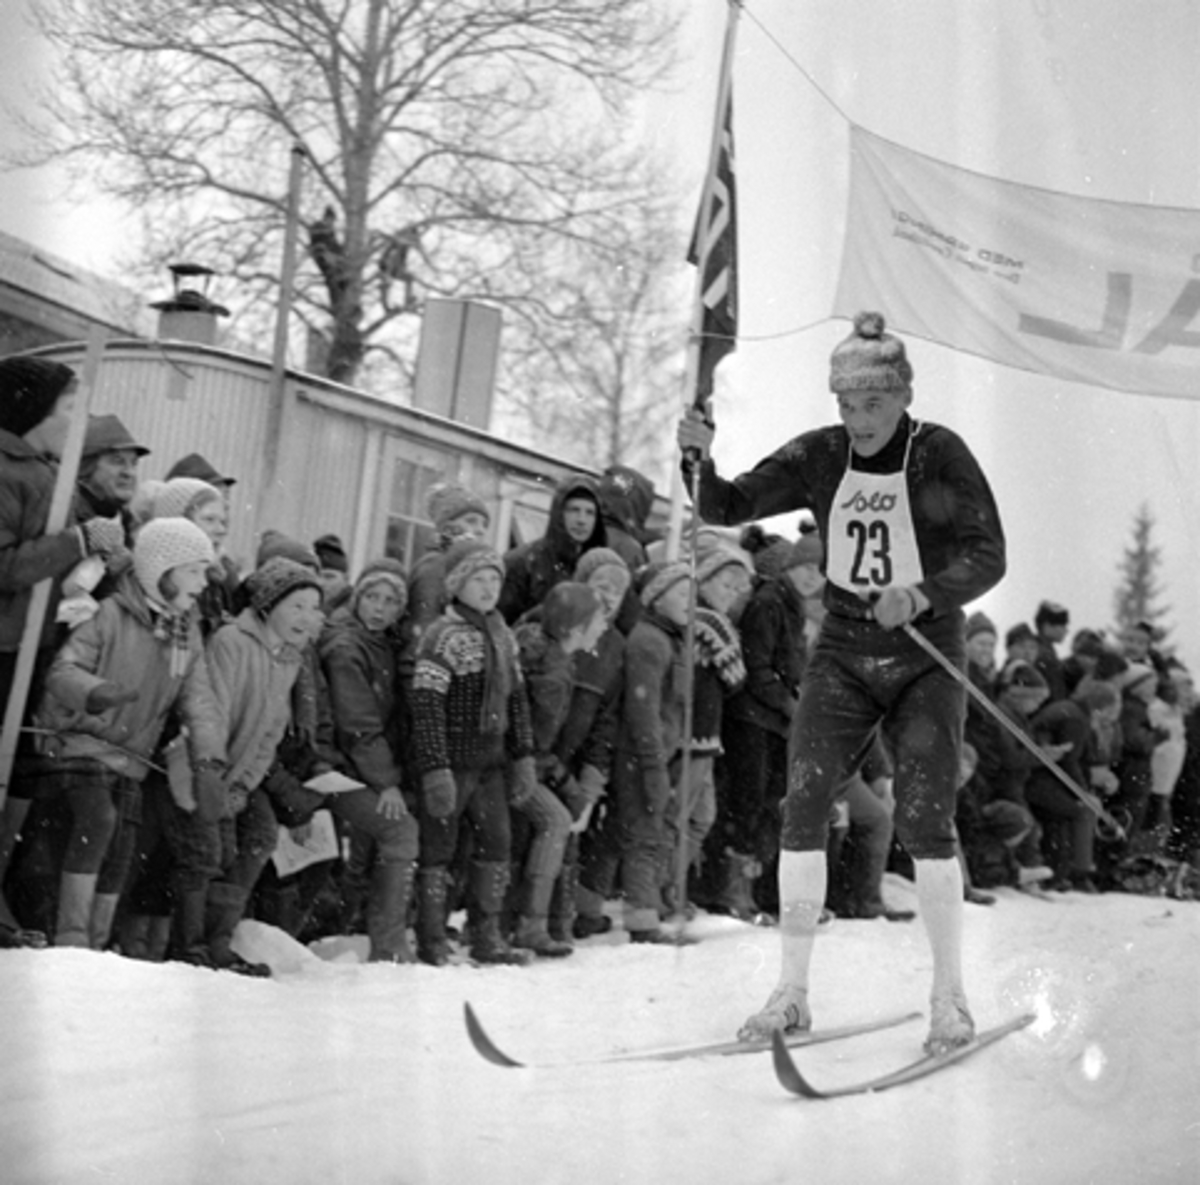 "DALASPRINTEN", ELITERENN I LANGRENN VED FAGERLUND SKOLE OG TRAVBANEN I BRUMUNDDAL I 1968. GJERMUND EGGEN, Gjermund Eggen (født 5. juni 1941 i Engerdal) er en tidligere langrennsløper og verdensmester. Han gikk for Engerdal SK. Eggen ble det store midtpunktet under VM på ski i Oslo i 1966, med gull på 15 km, 50 km og på stafetten. Han ble kalt «Engerdalsprinsen», men etter VM på hjemmebane ble han skikongen. Hans bror Jo Eggen var også en habil skiløpet, men oppnådde aldri samme status som Gjermund. Han har tre individuelle NM-titler, og stafettgull fra NM 1966. Gjermund Eggen ble tildelt Sportsjournalistenes statuett, som Årets idrettsnavn, Morgenbladets Gullmedalje i 1966 og i 1968 ble han tildelt Holmenkollmedaljen. I hjemkommunen er han hedret med egen statue, som ble avduket 5. august 2006 ved siden av skimuseet. I 1966 gav Eggen ut boken 3 x Gull. Han kom også med flere plateinnspillinger. Etter endt karriere startet han skiproduksjon i hjembygda si. Skiene ble kalt Eggen-ski. KILDE WIKIPEDIA